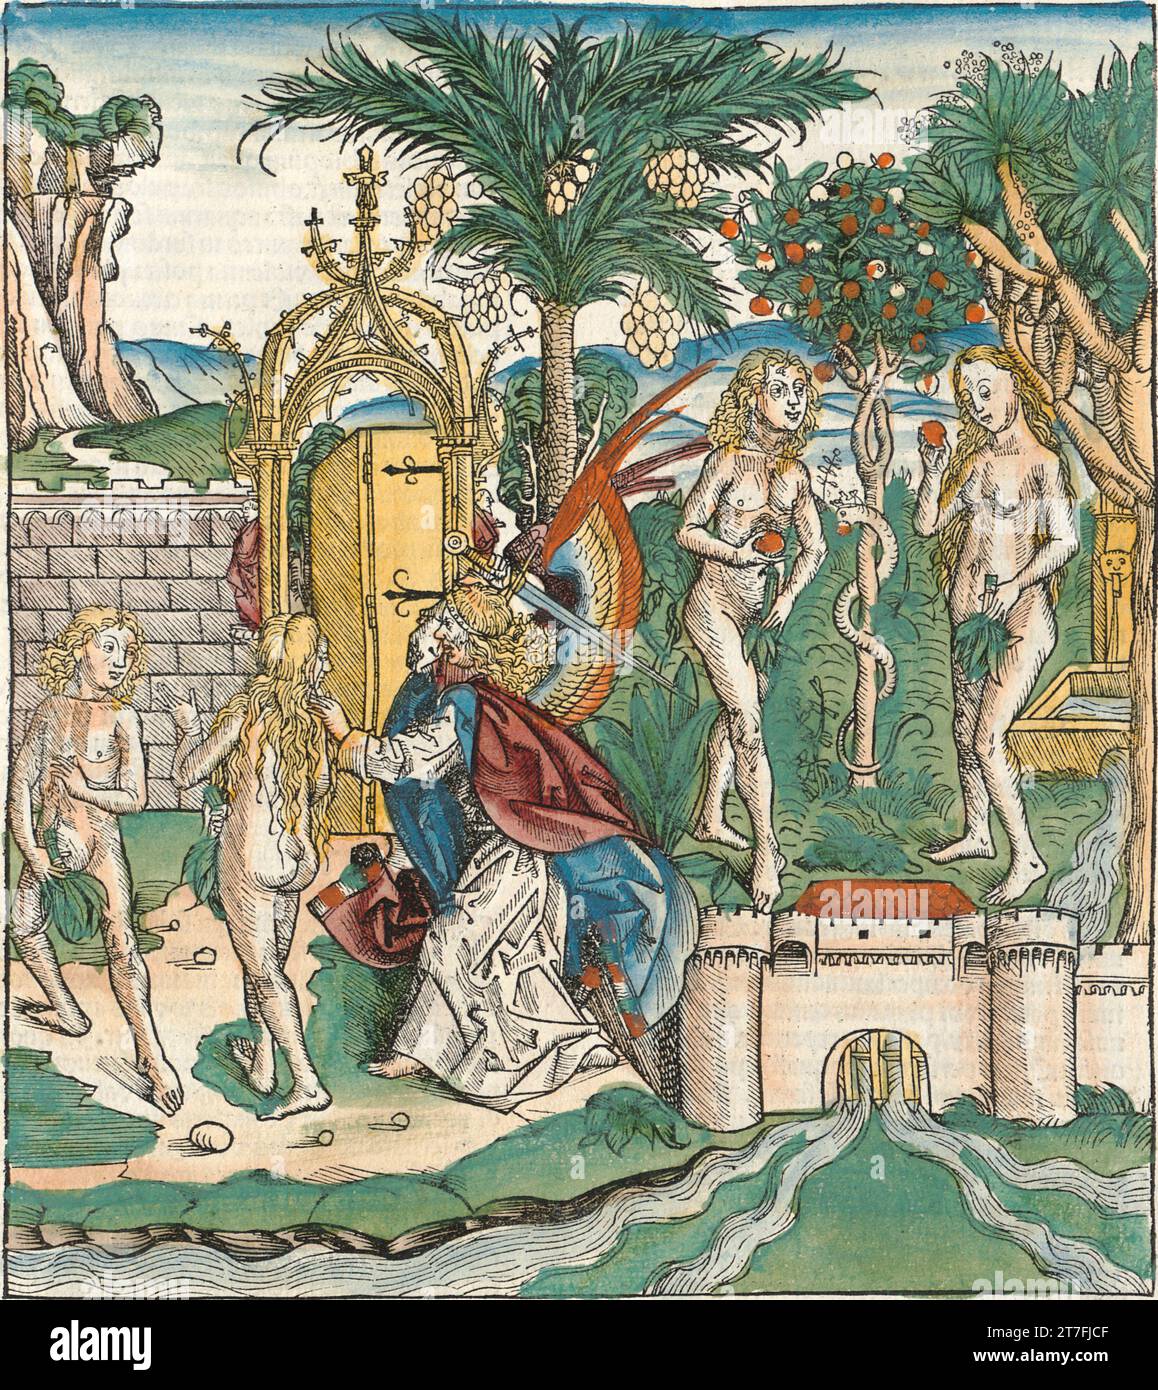 Adam et Ève banni d'Eden - Illustration de la chronique de Nuremberg, 1493. Illustré par Wilhelm Pleydenwurff et Michael Wolgemut Banque D'Images